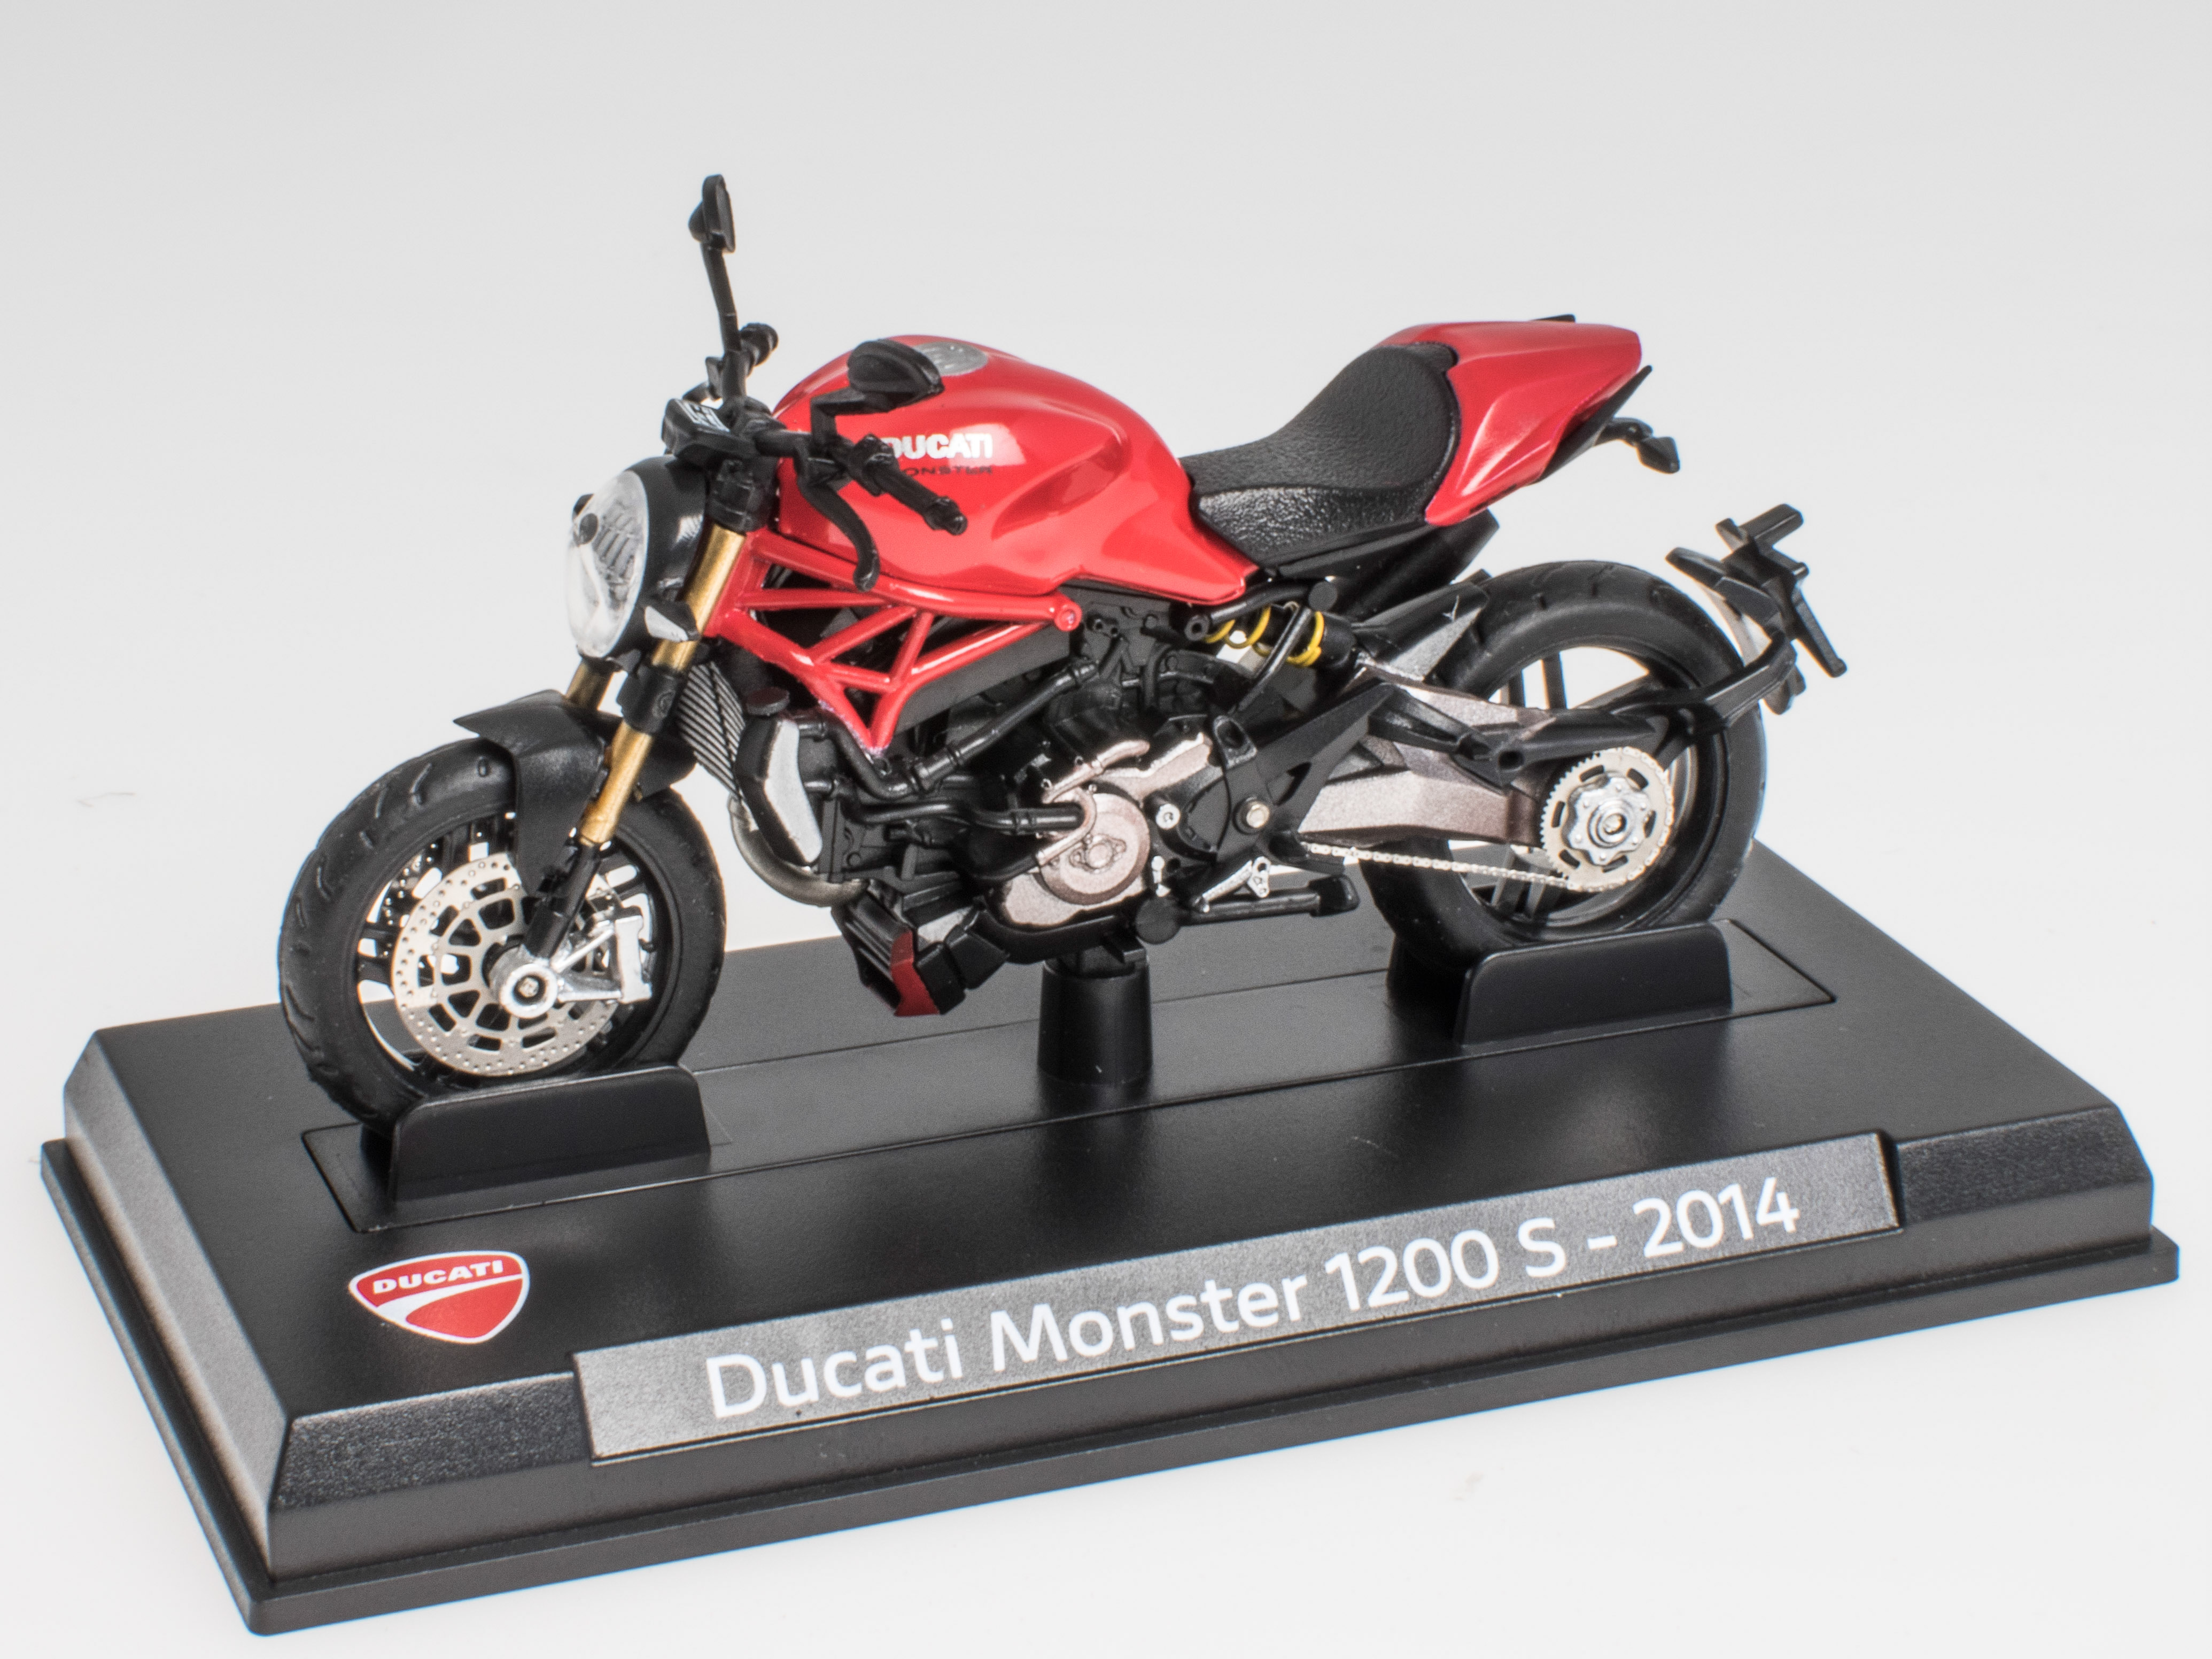 DUCATI Monster 1200 S - 2014